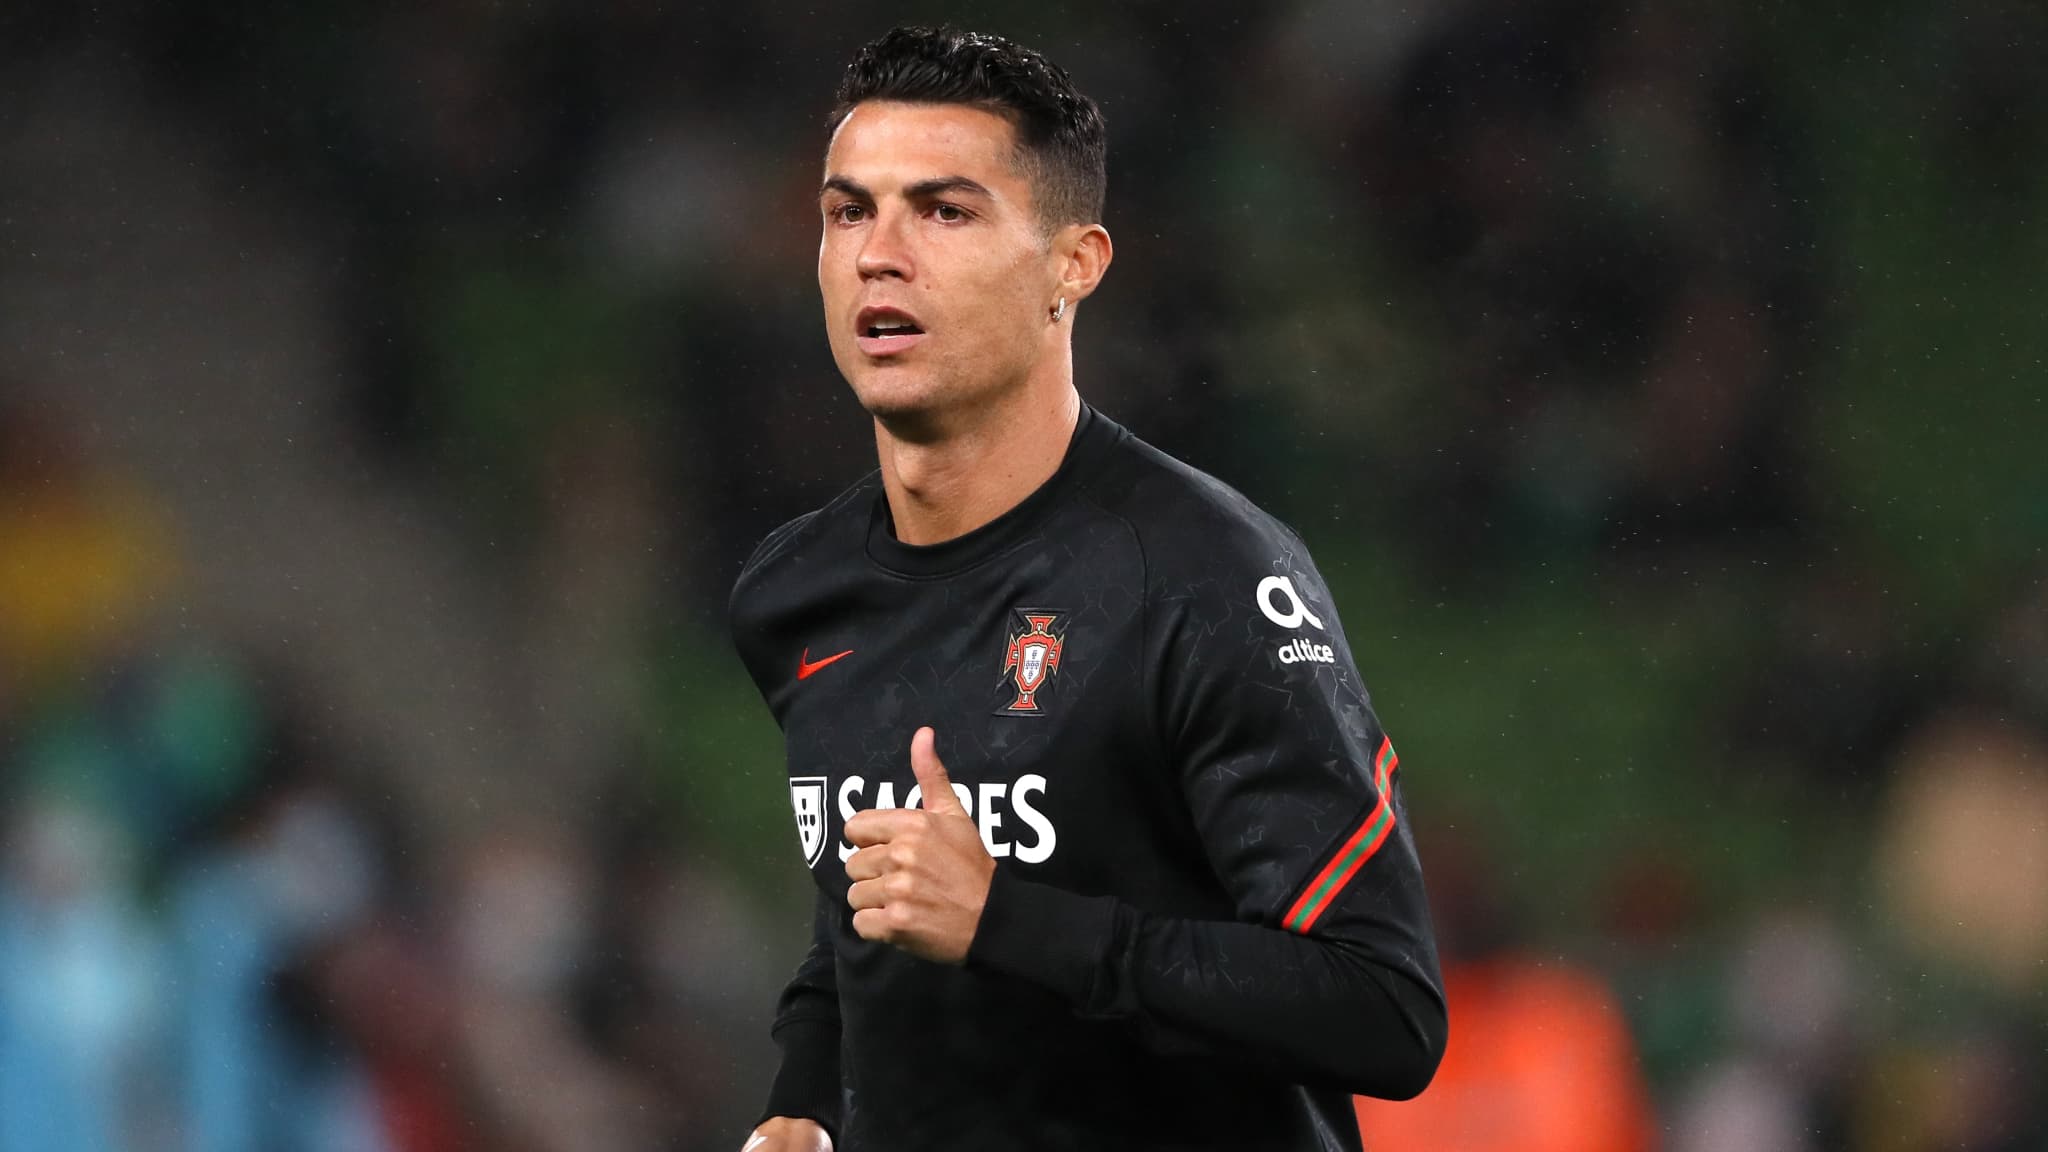 Le brassard de Cristiano Ronaldo vendu  64.000 euros pour aider